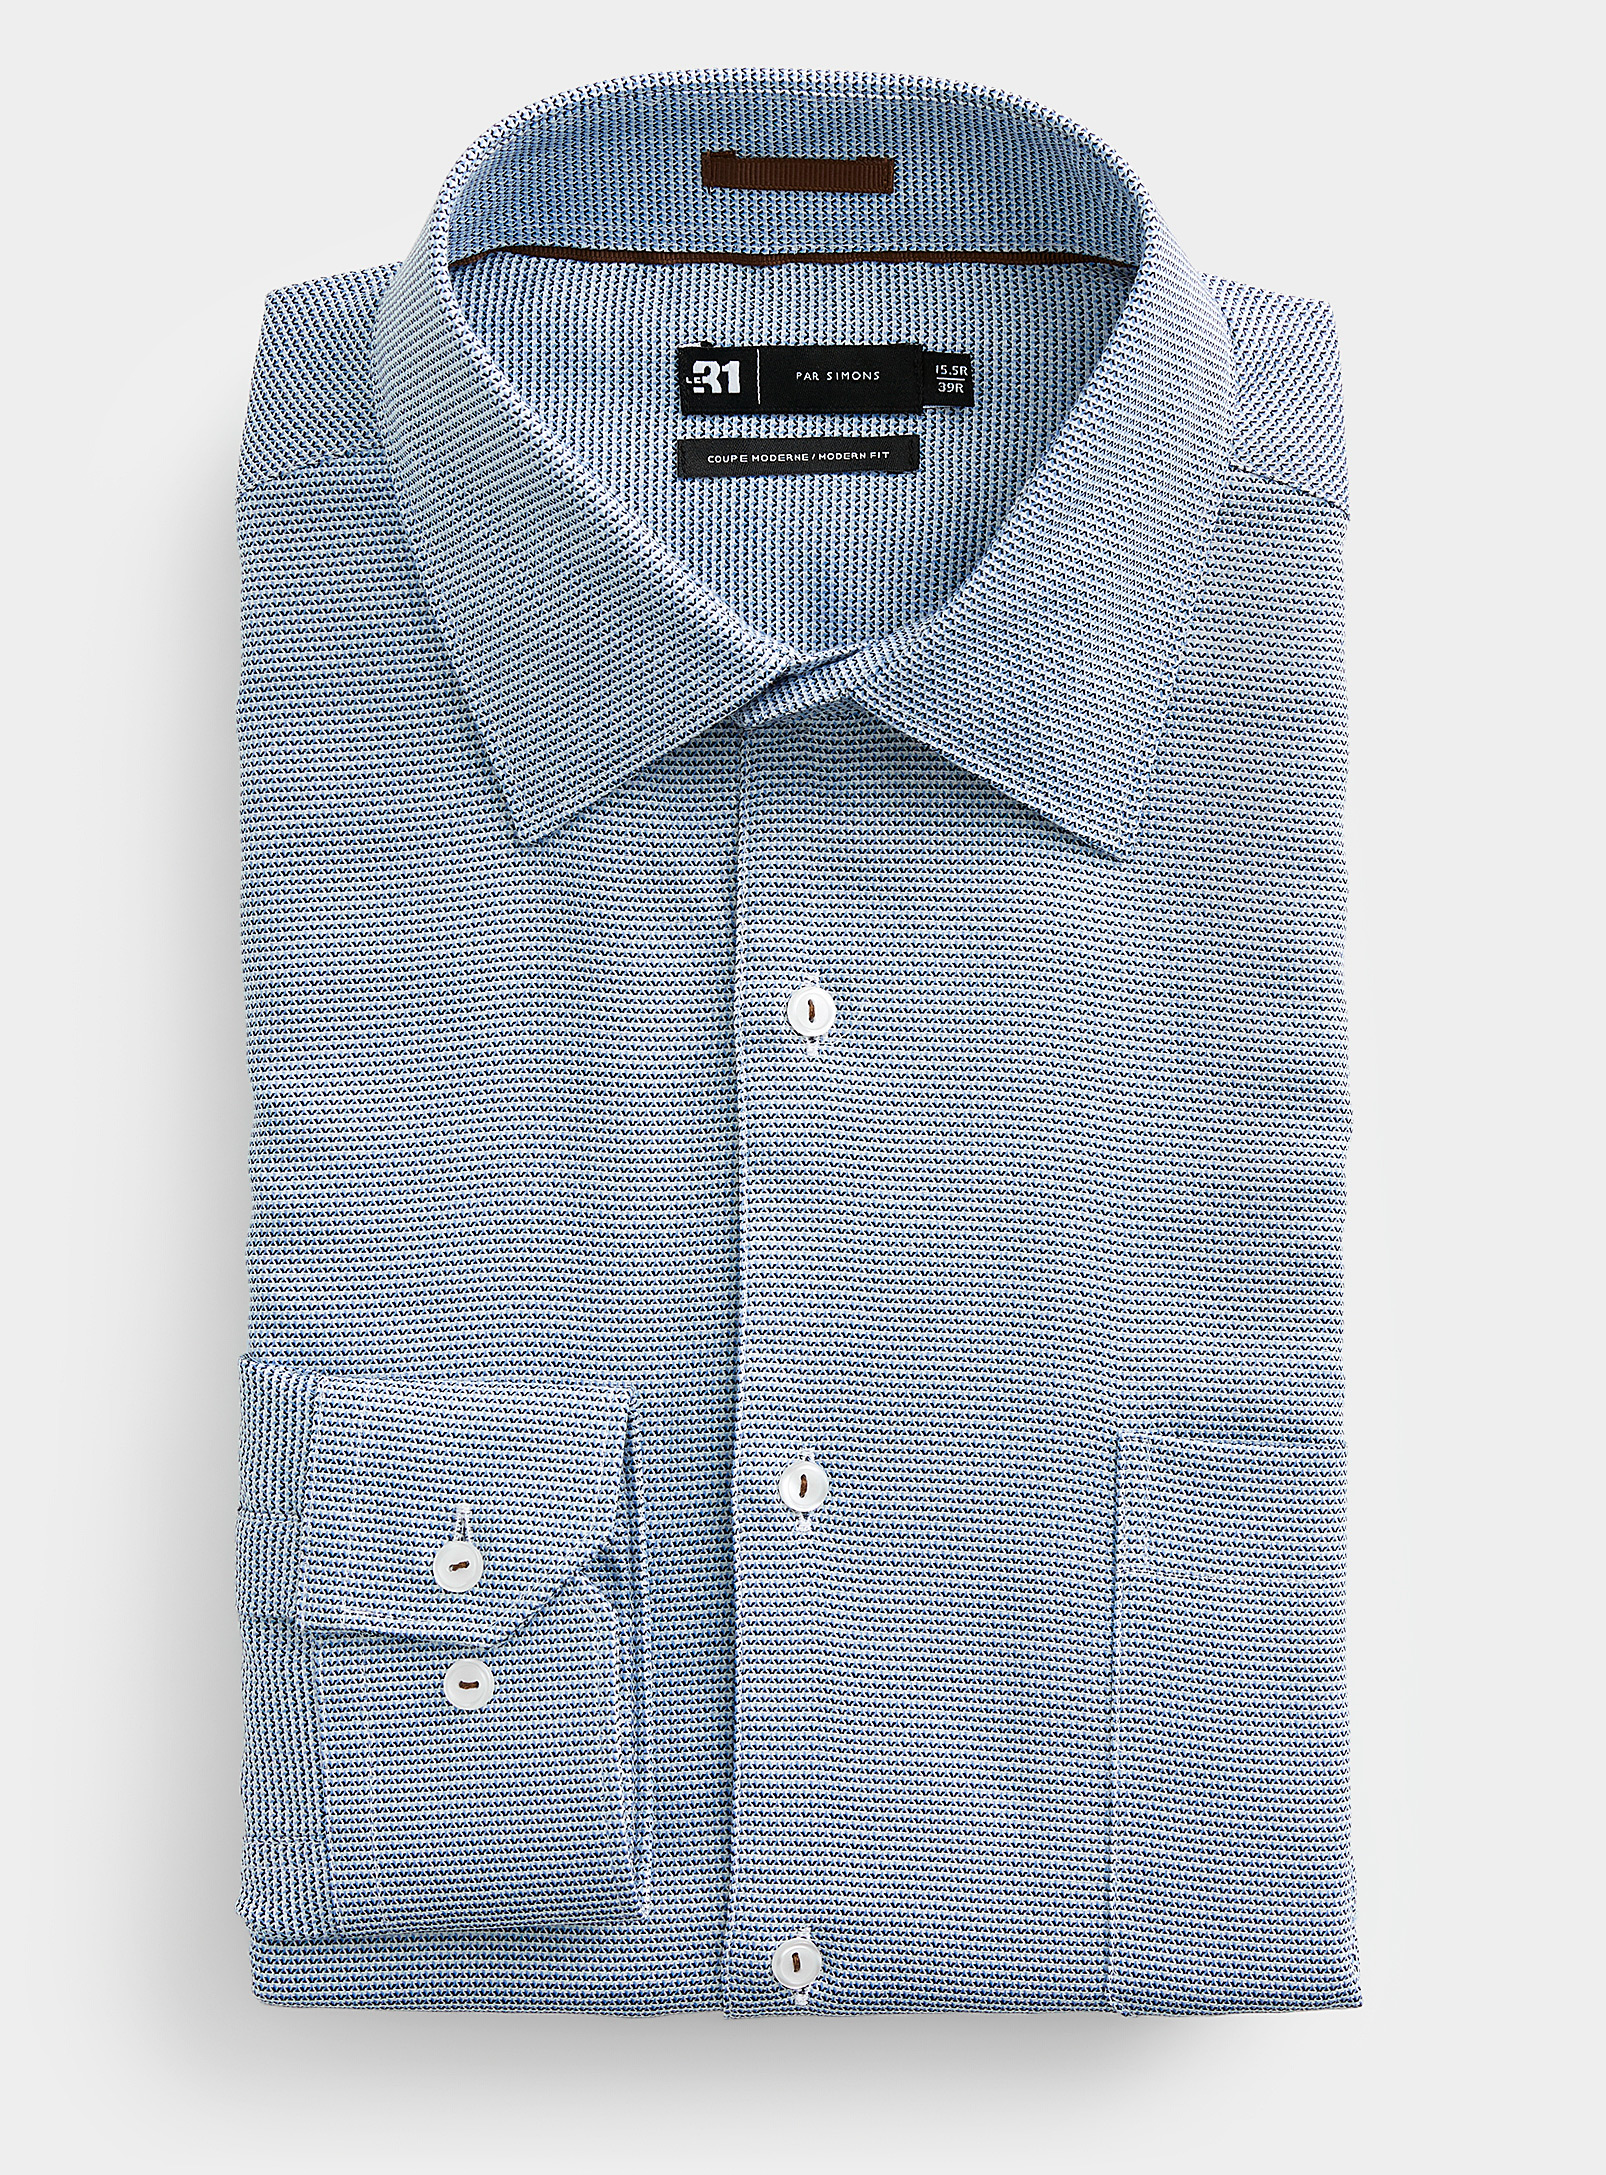 Le 31 - Men's Jacquard mini-mosaic blue shirt Modern fit